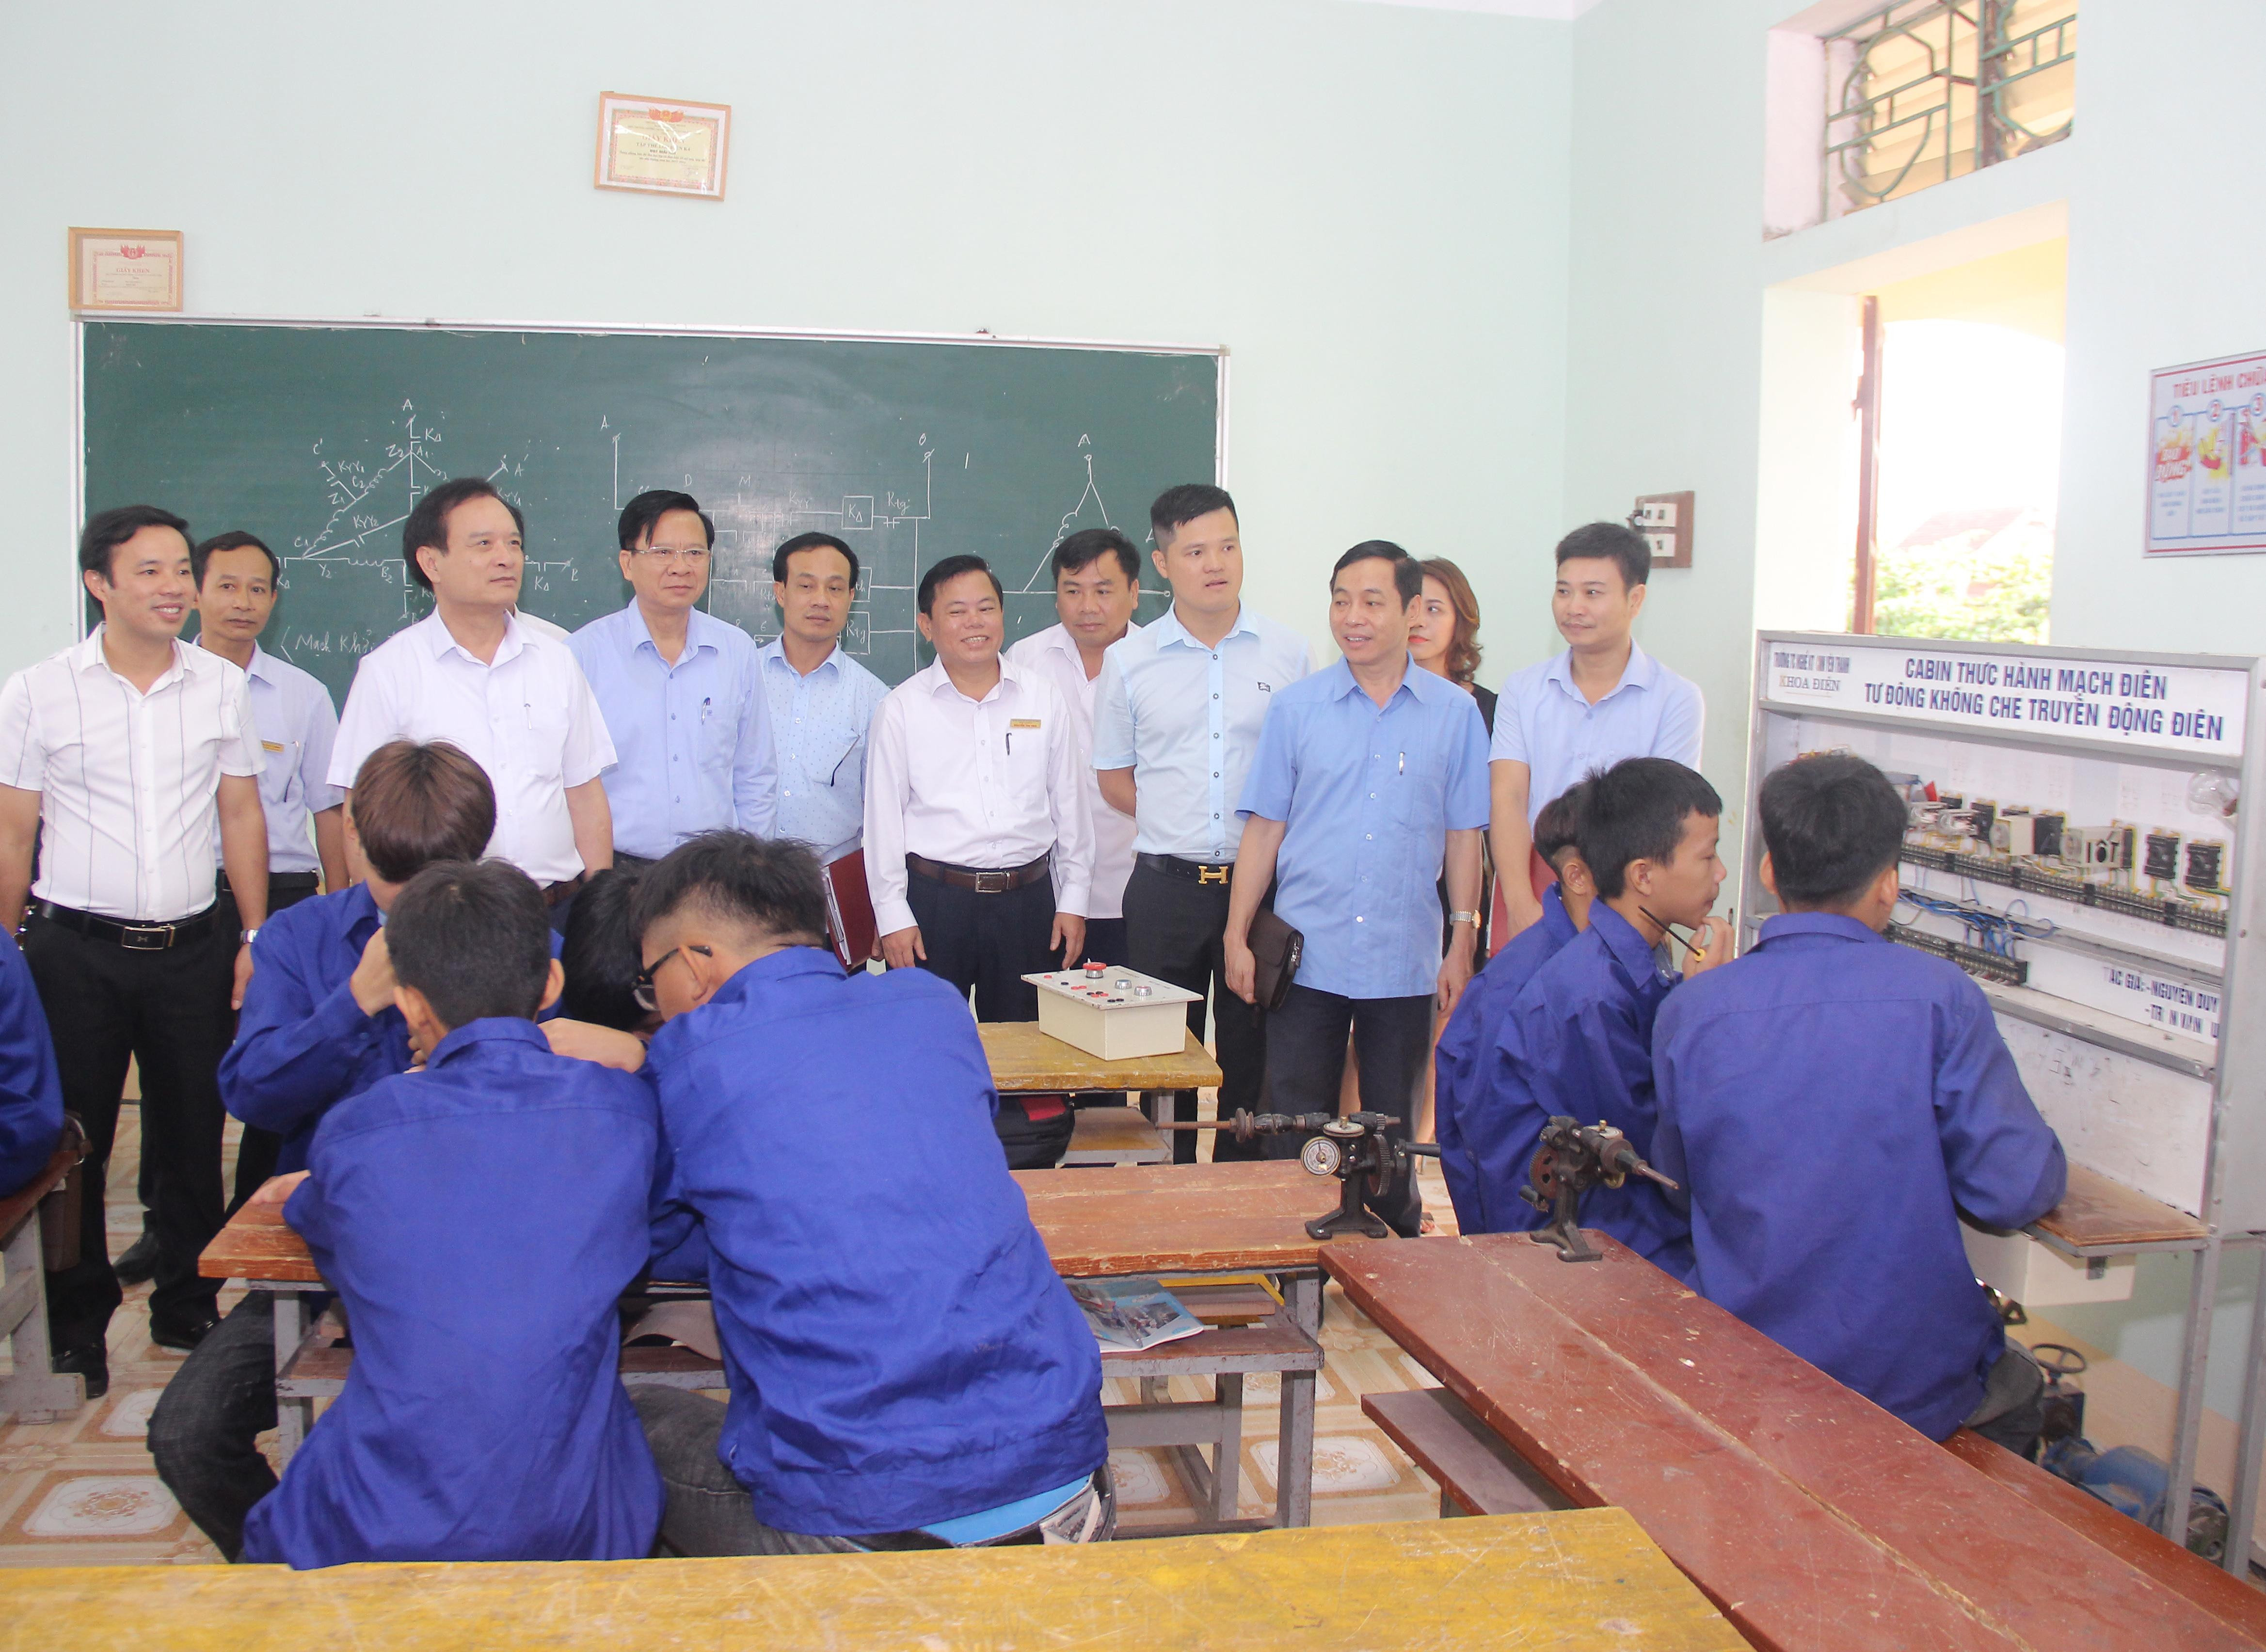 Đoàn kiểm tra khảo sát một lớp học tại Trường trung cấp kỷ thuật Yên Thành. Ảnh: Mai Hoa